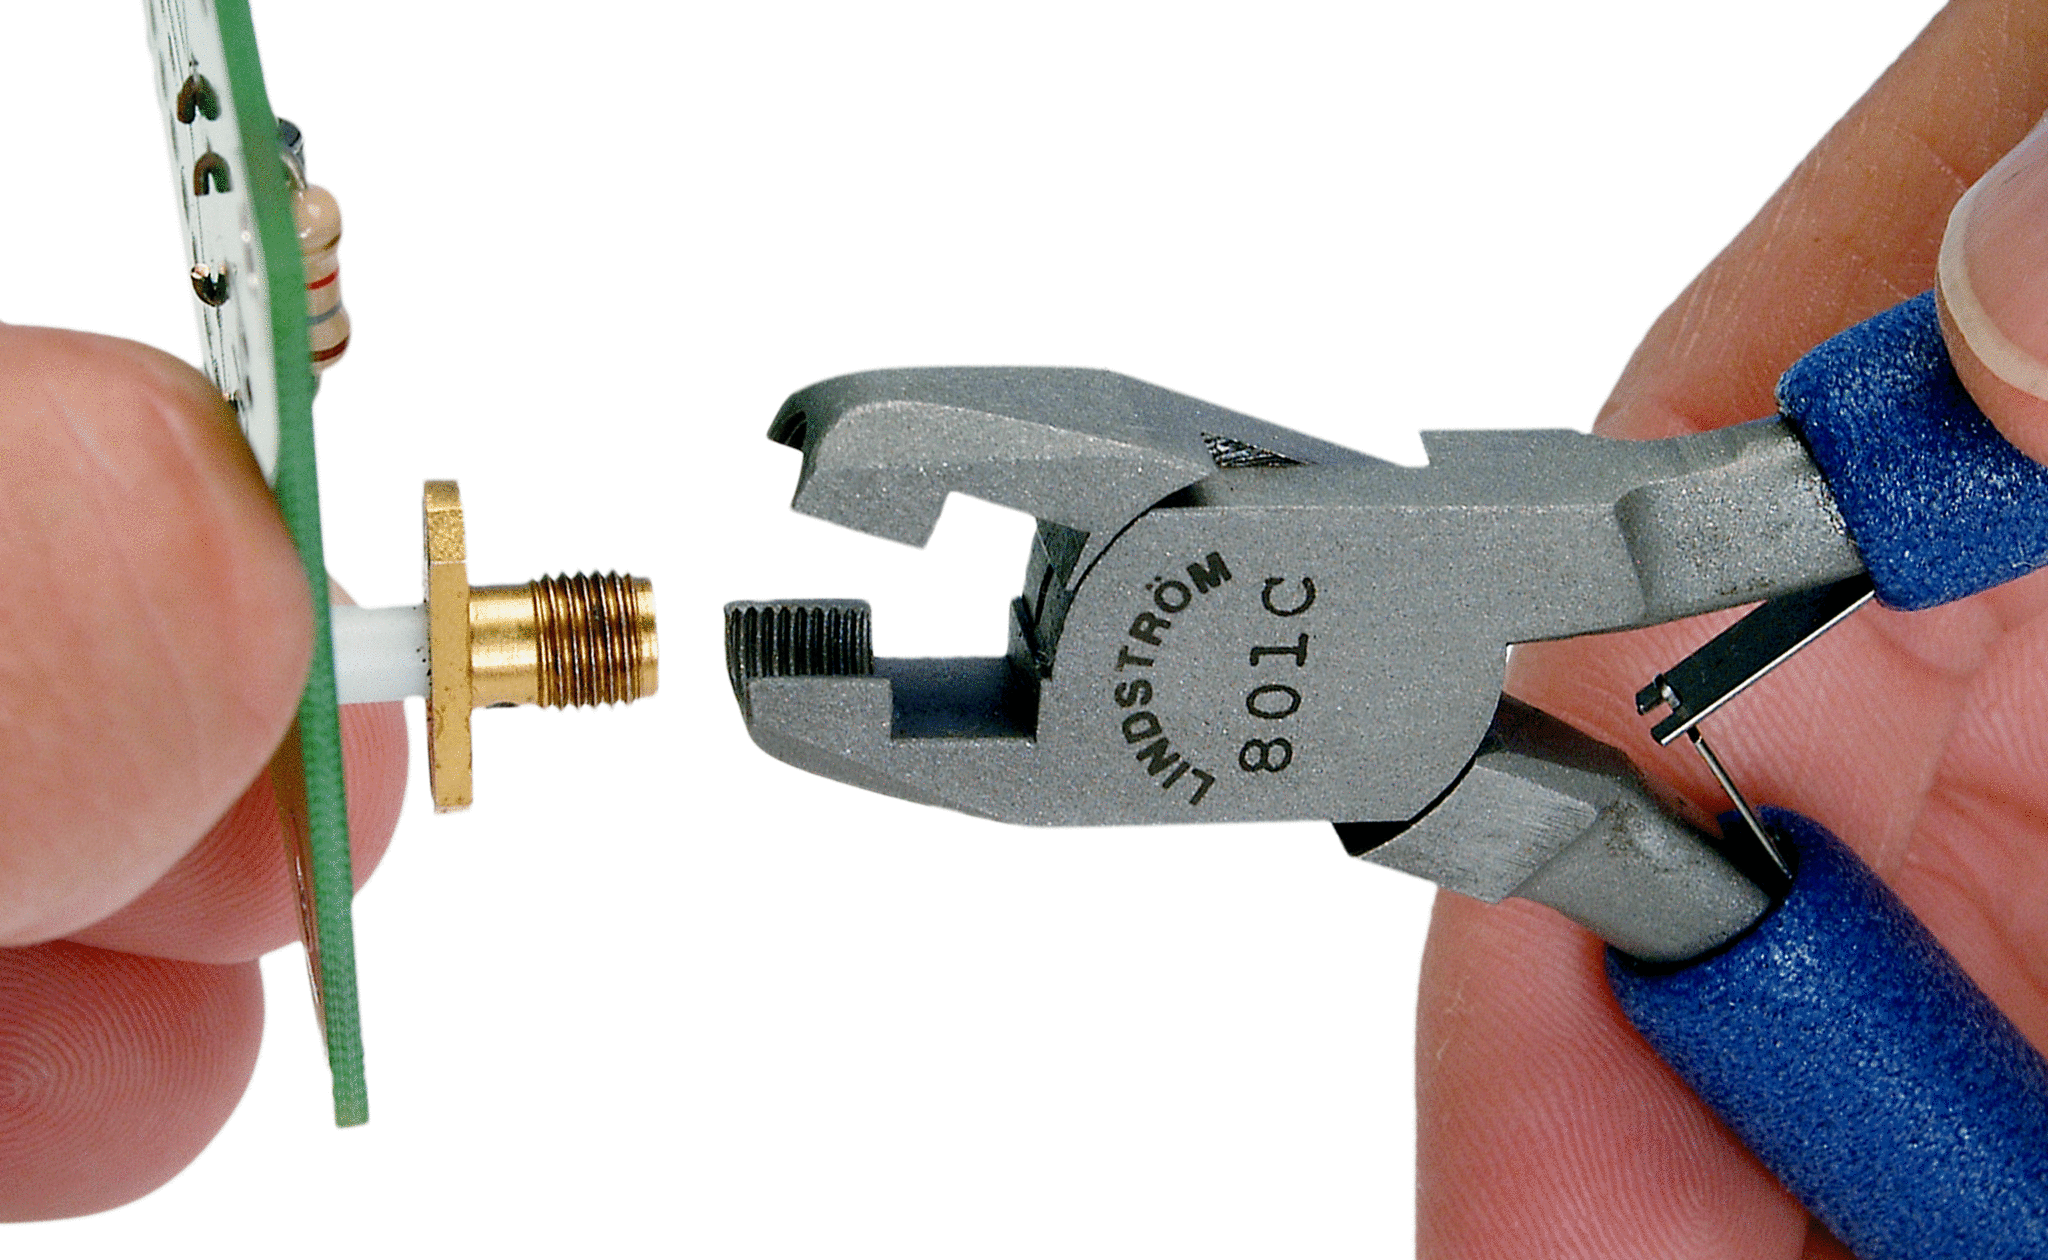 Connect tool. Коннекторы для коаксиального кабеля.